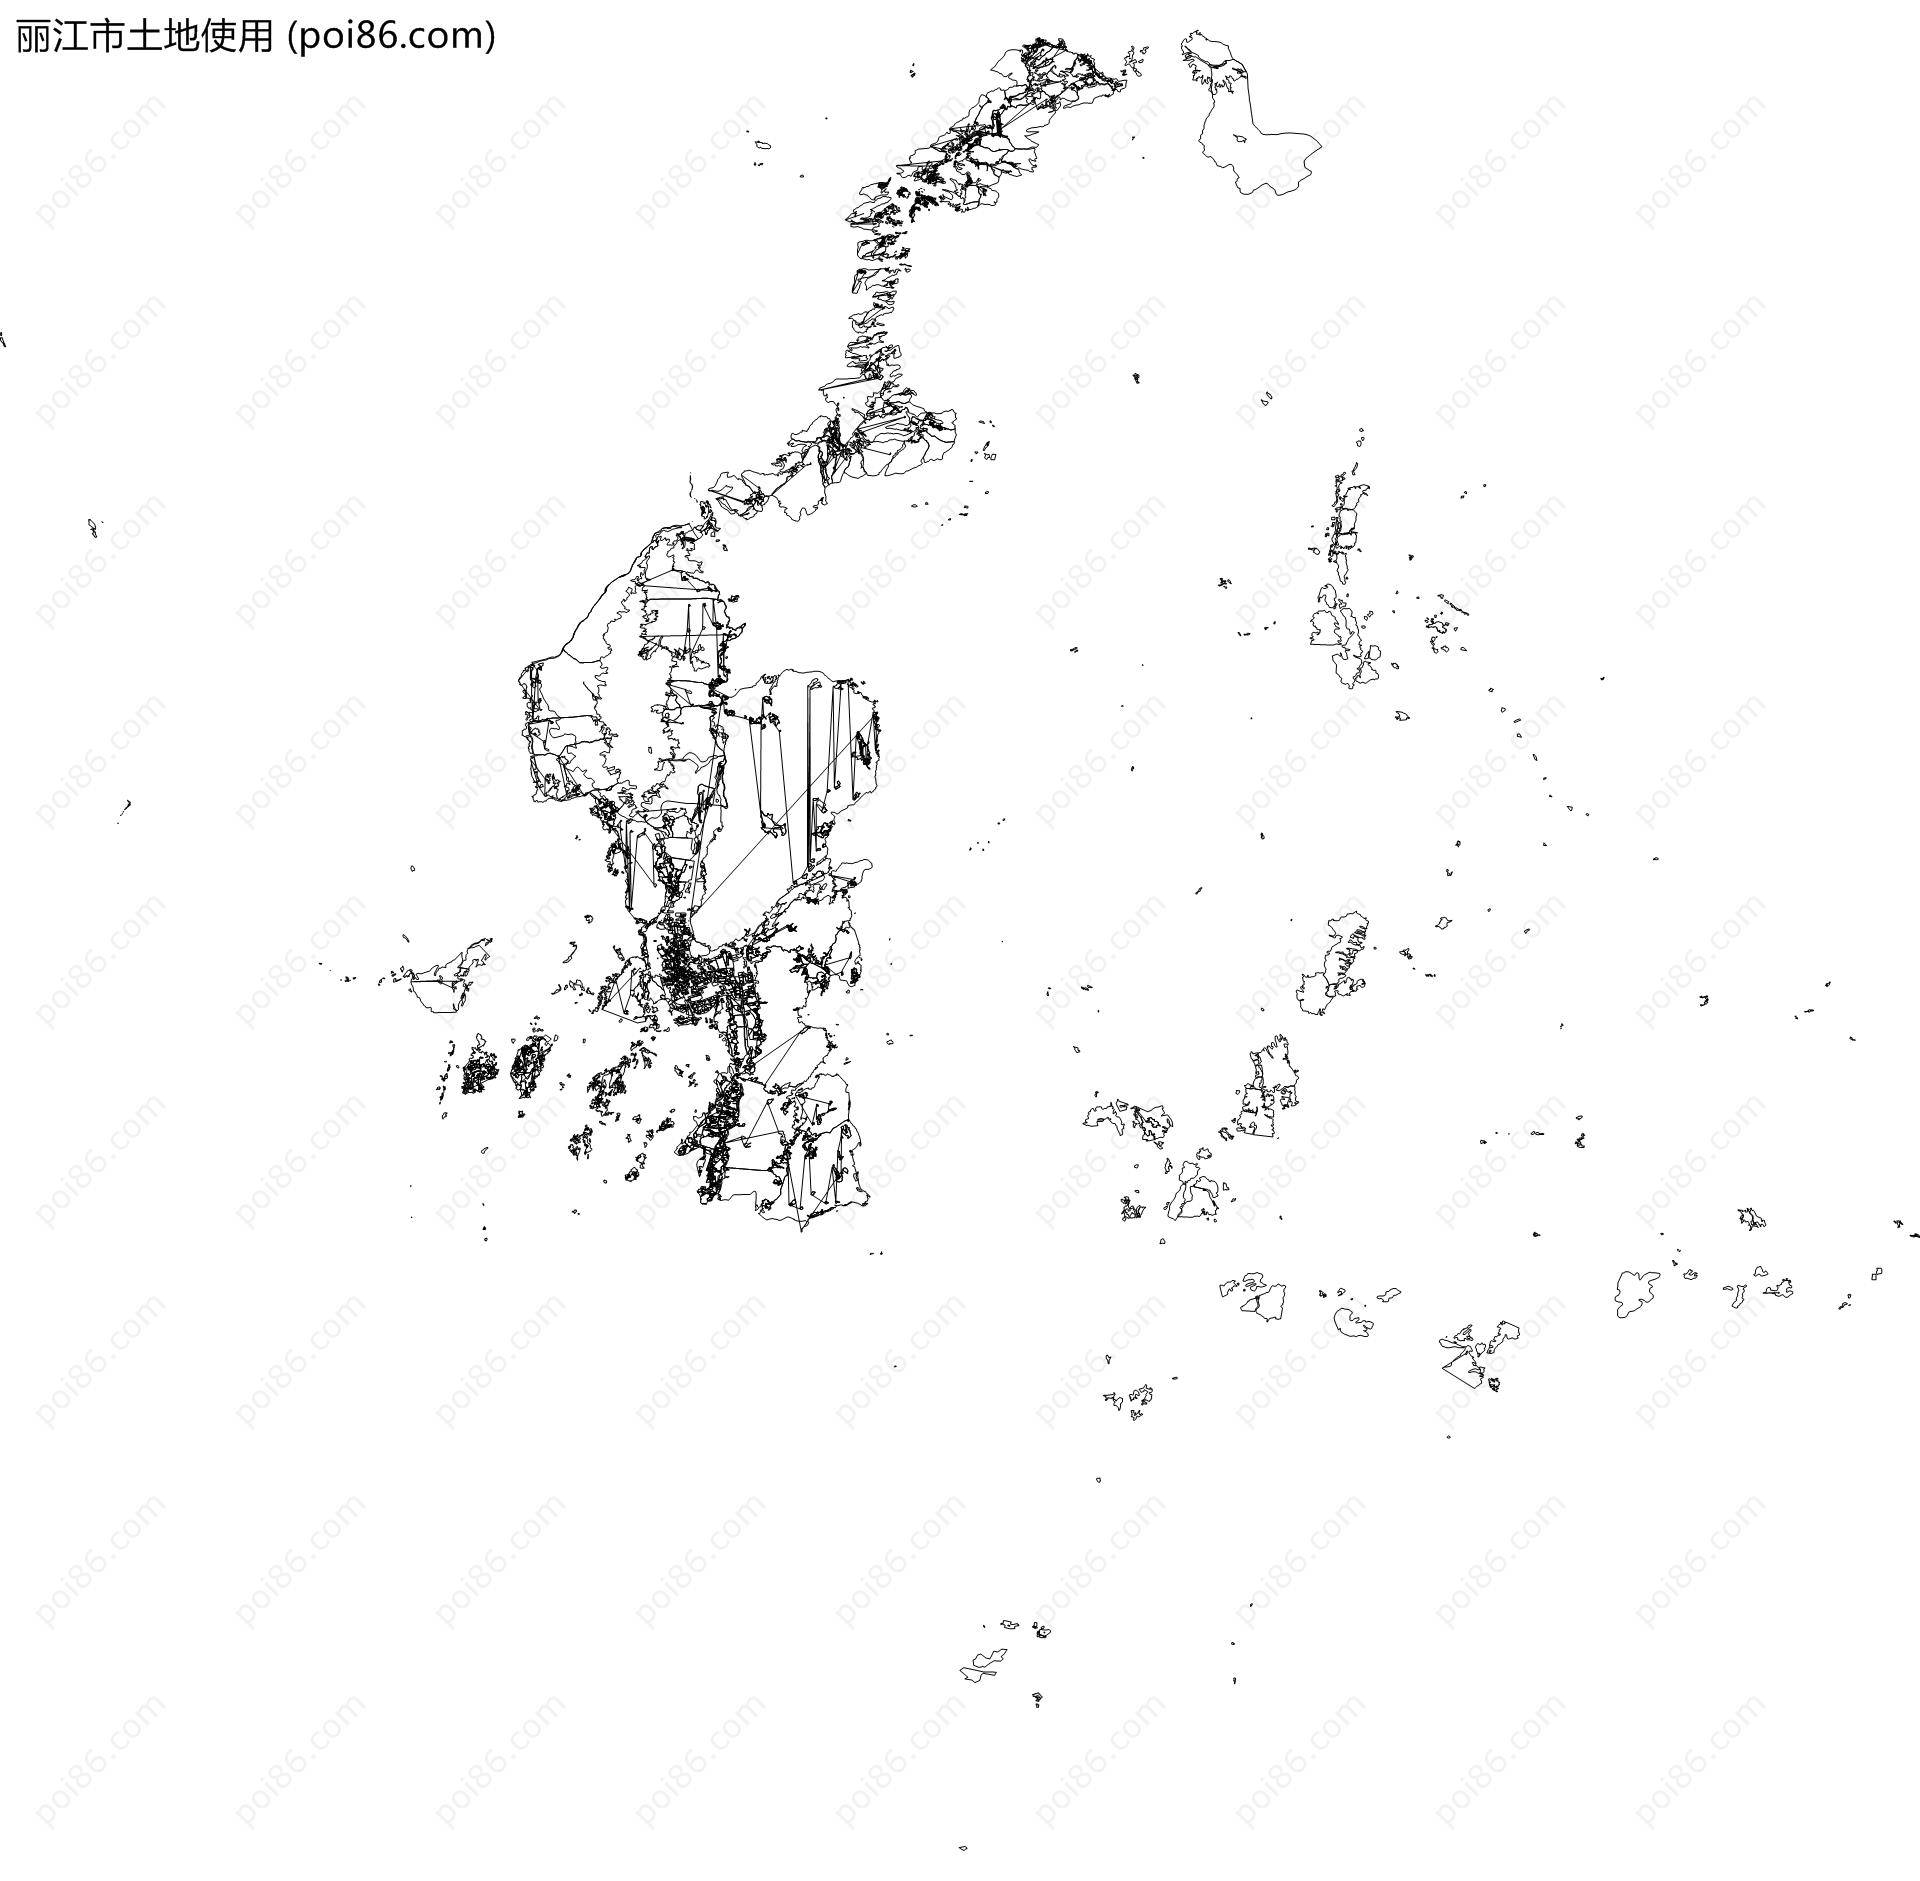 丽江市土地使用地图